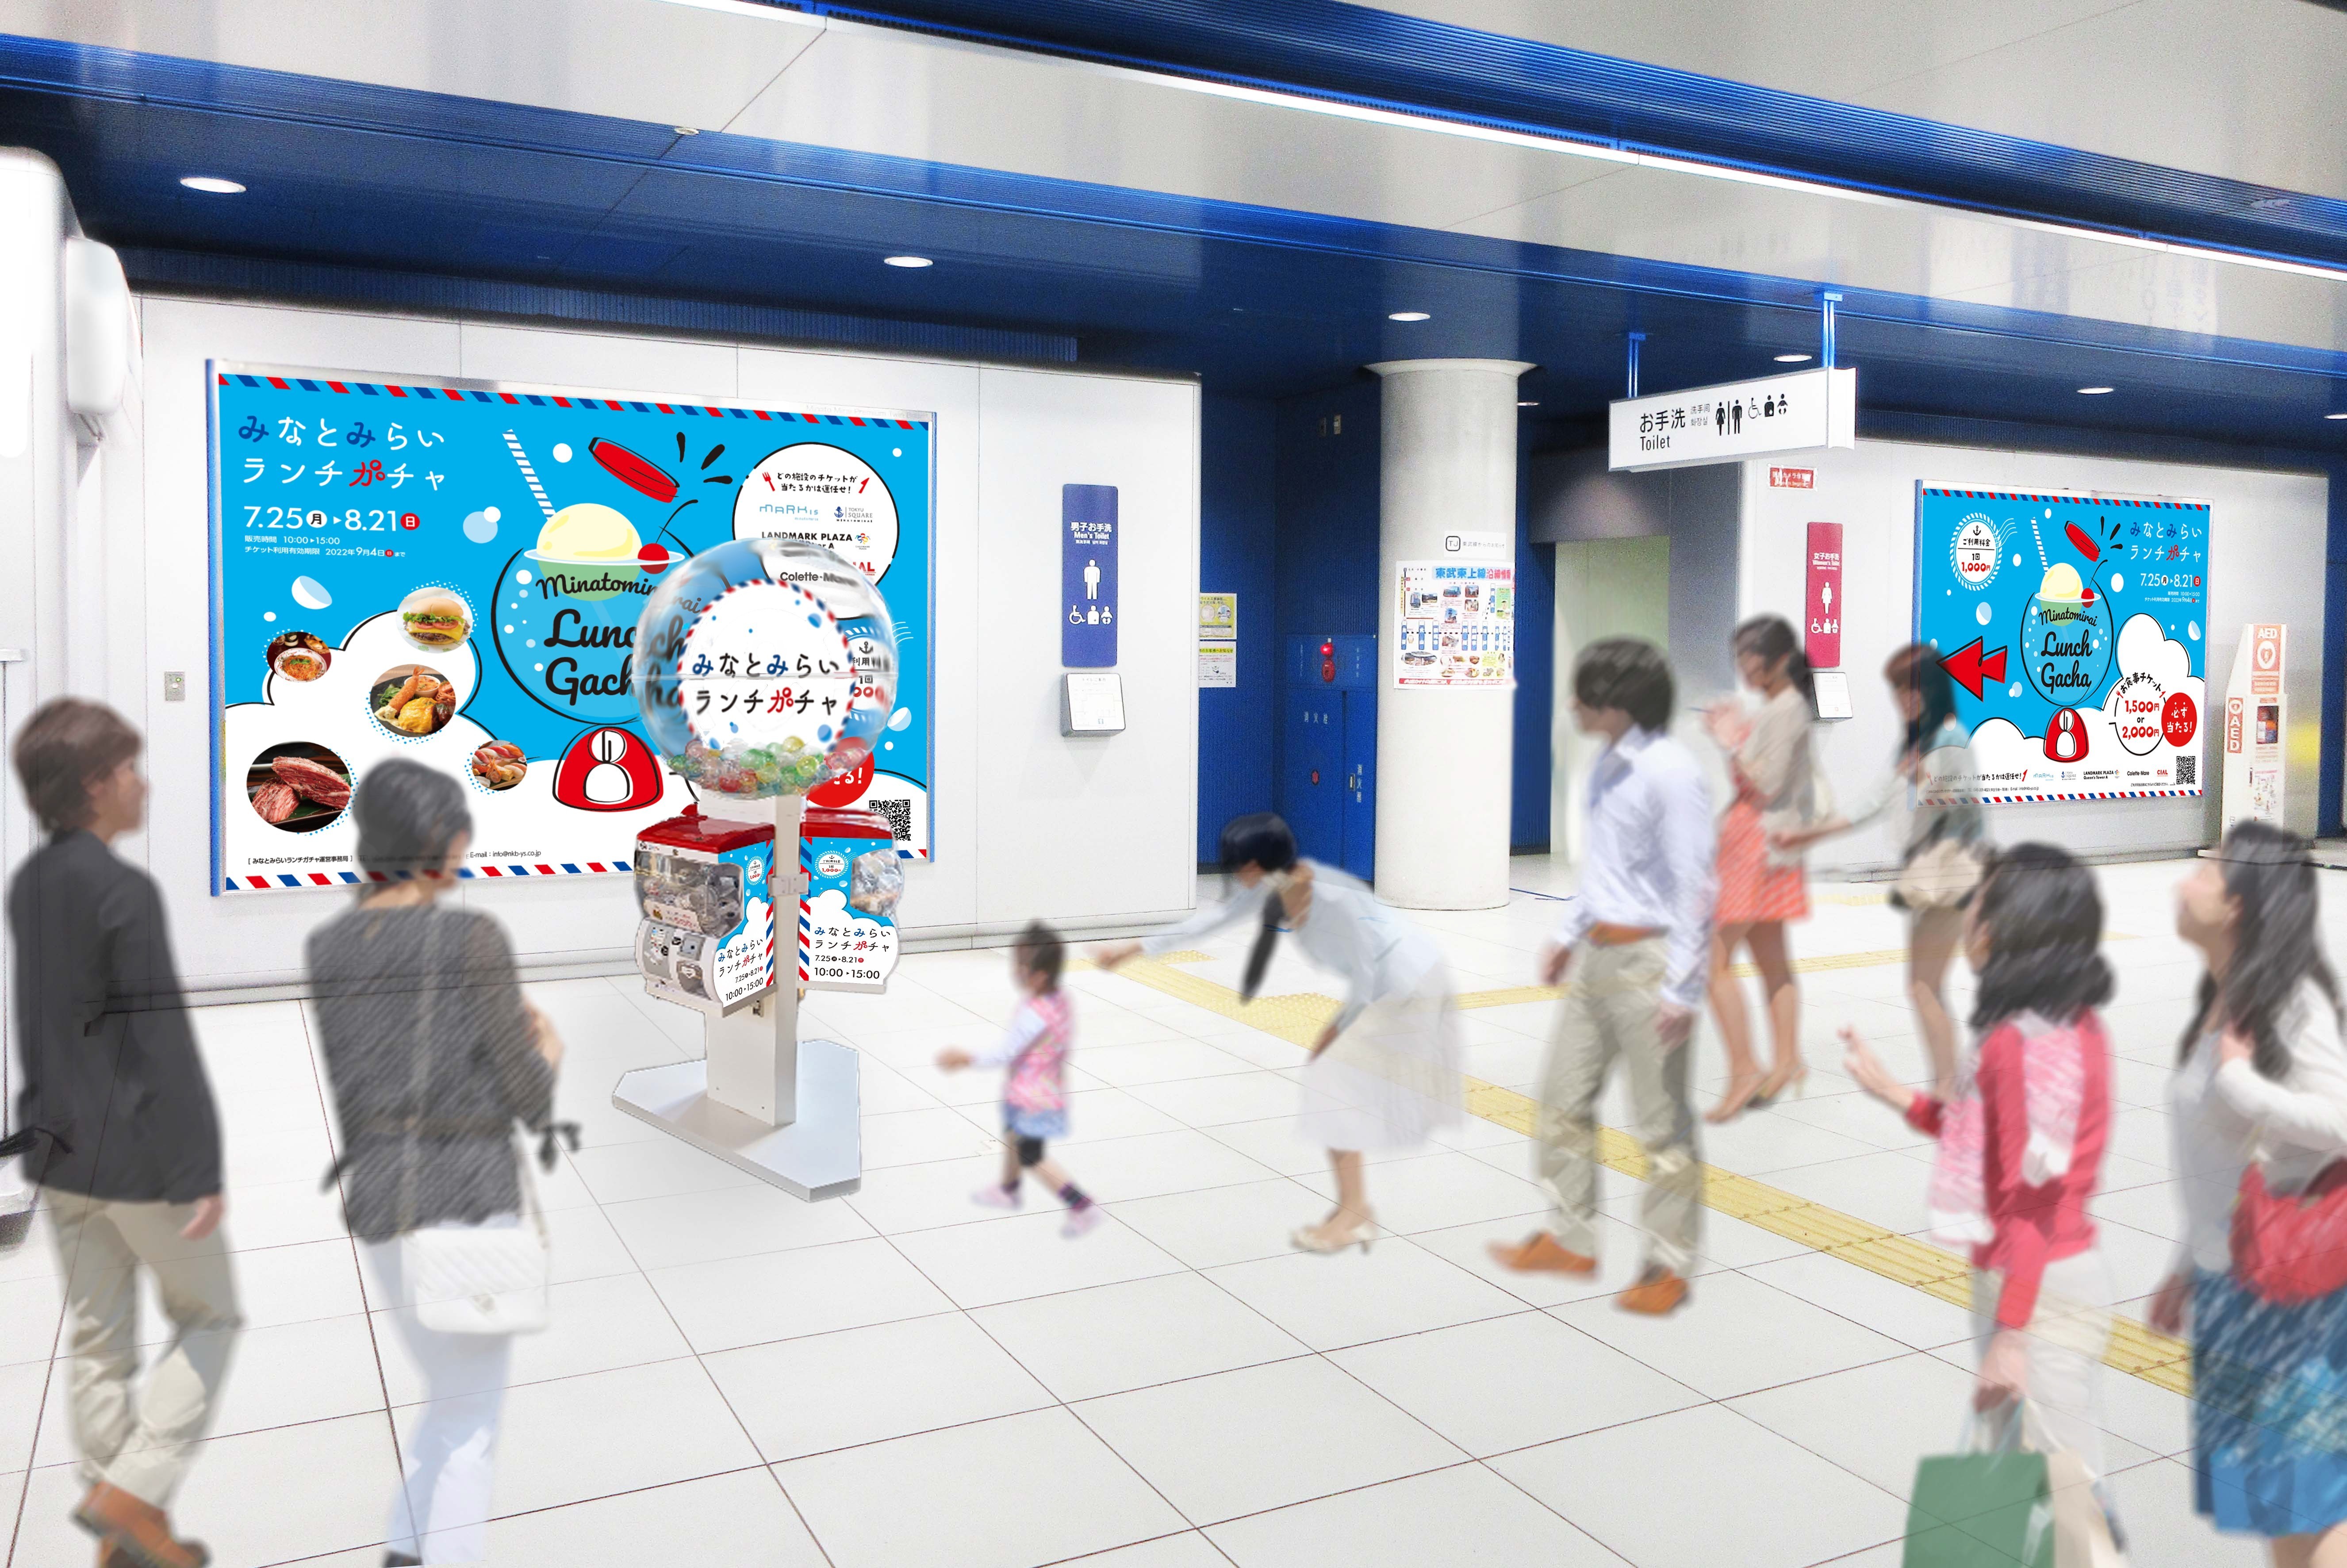 横浜みなとみらい周辺の商業施設の飲食店で使える
お得なチケットが当たる「ランチガチャ」、みなとみらい駅に設置　
2022年7月25日(月)～2022年8月21日(日)